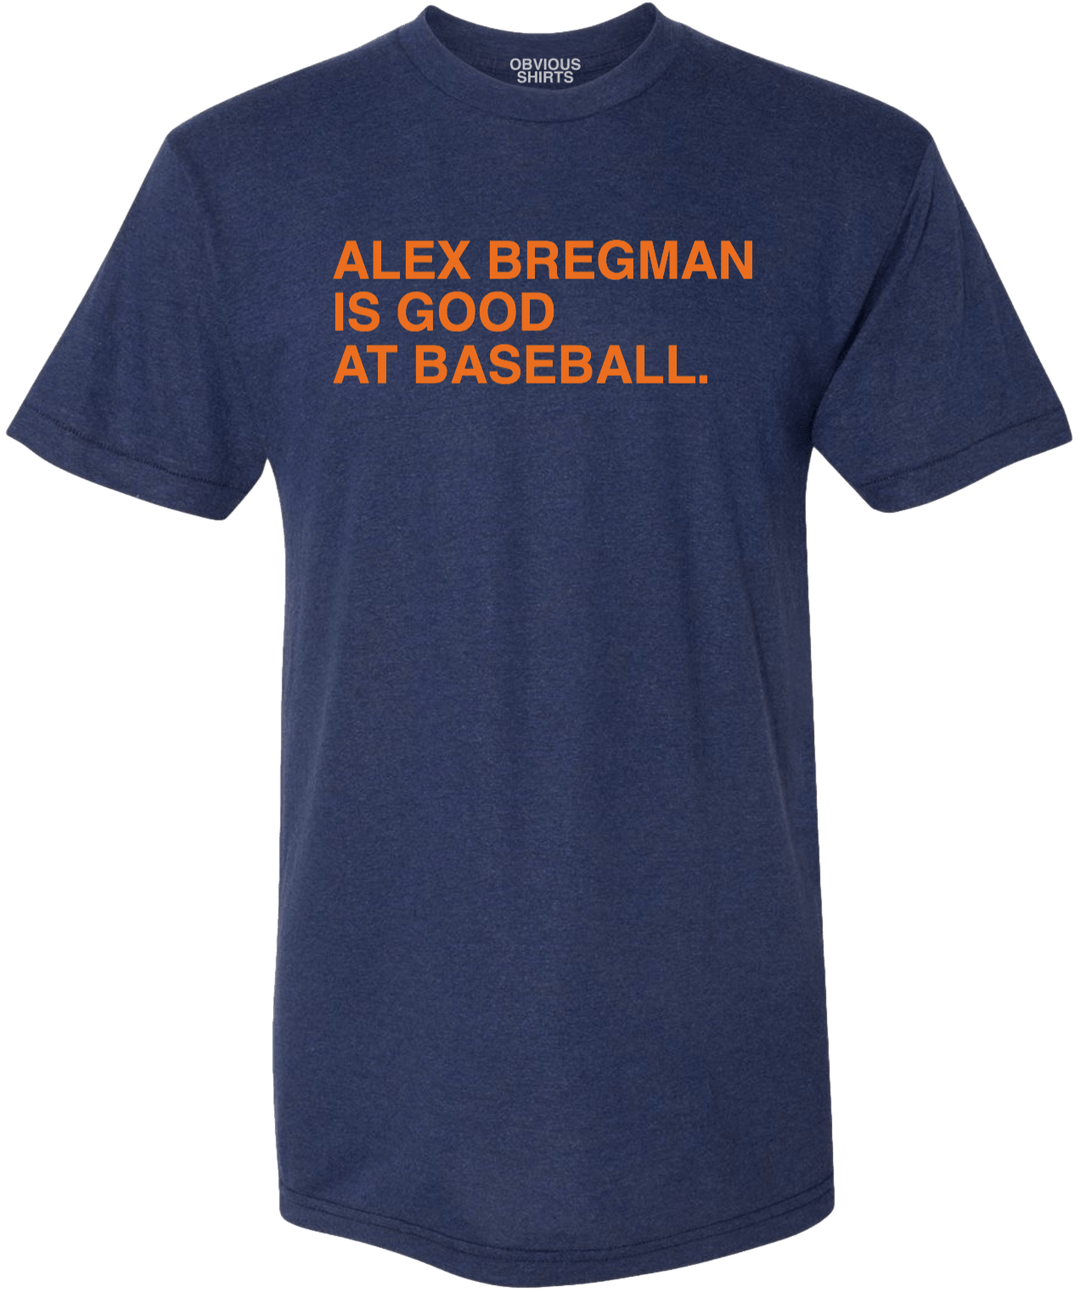 ALEX BREGMAN IS GOOD AT BASEBALL. - OBVIOUS SHIRTS